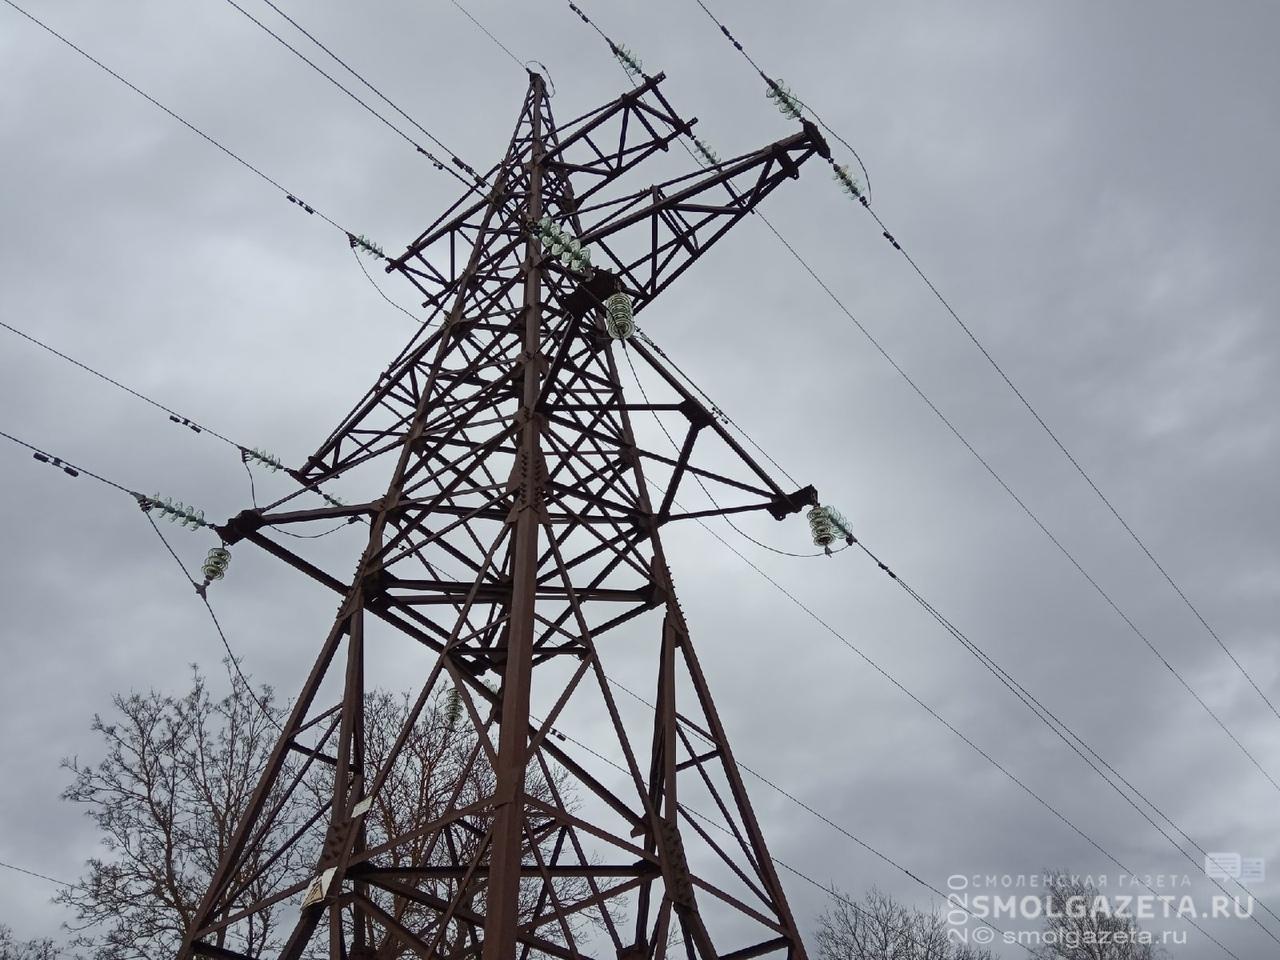 Ремонтные бригады Смоленскэнерго восстанавливают электроснабжение потребителей Смоленской области